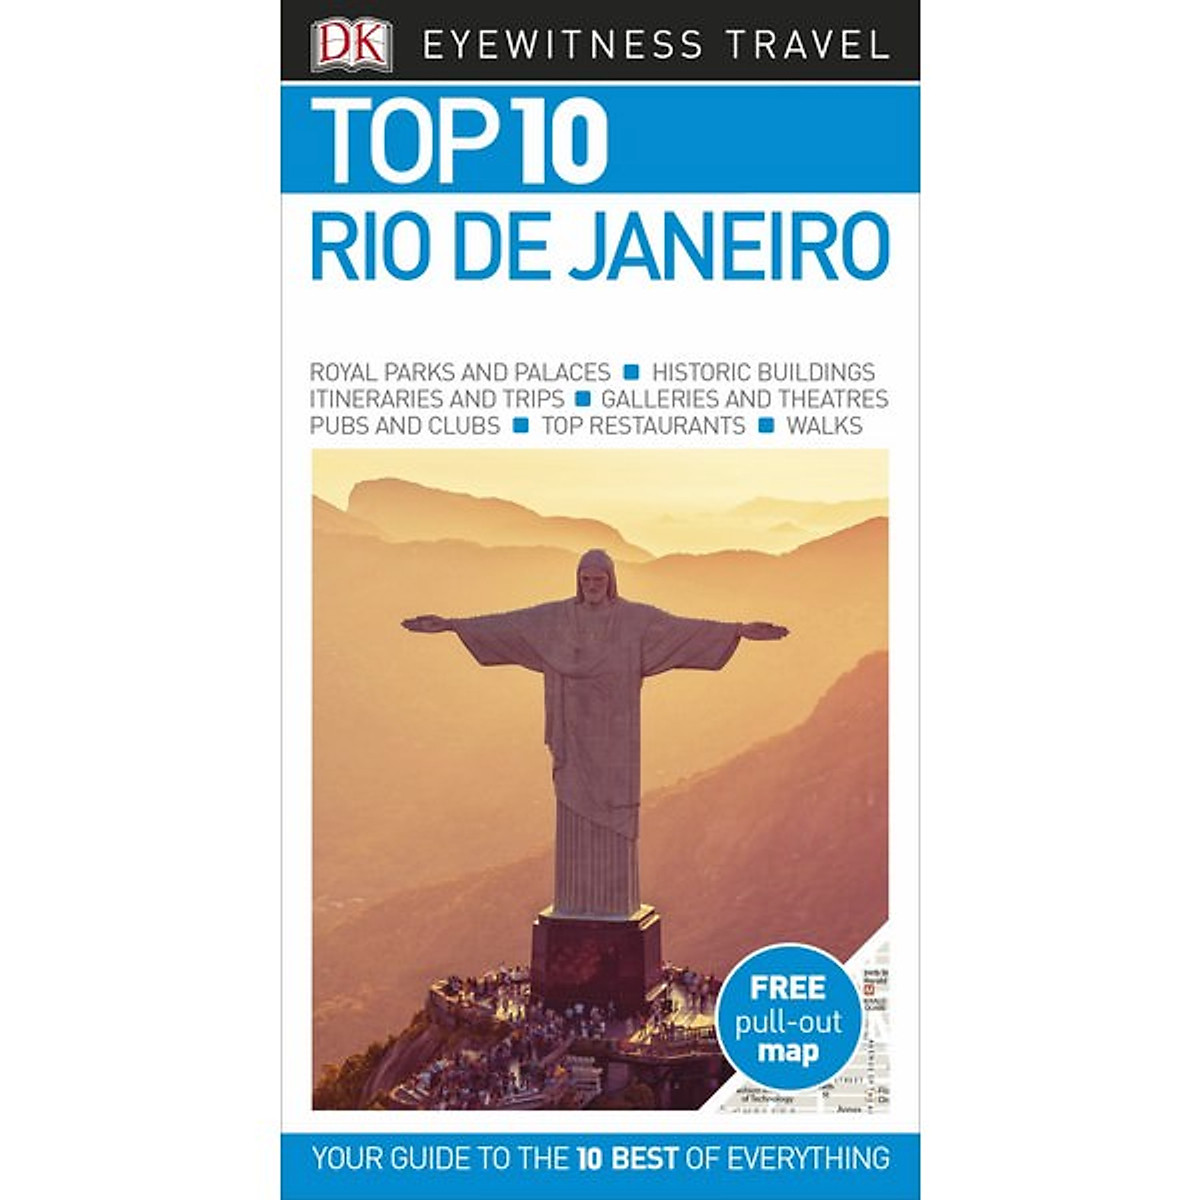 [Hàng thanh lý miễn đổi trả] DK Eyewitness Top 10 Rio de Janeiro